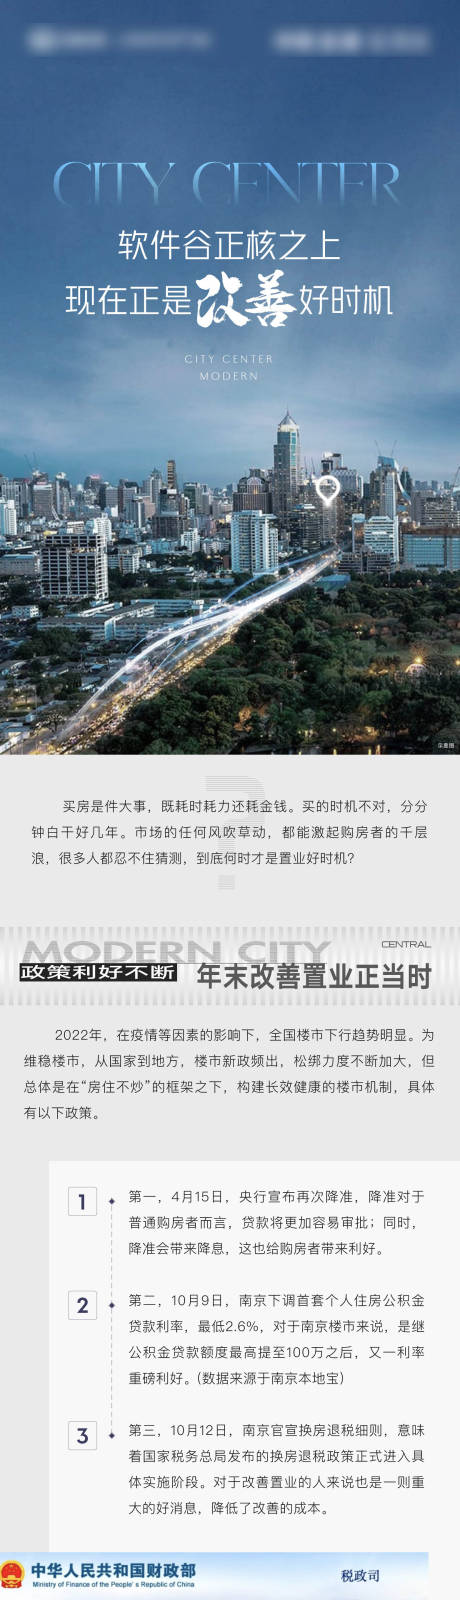 地产改善城市繁华配套系列海报